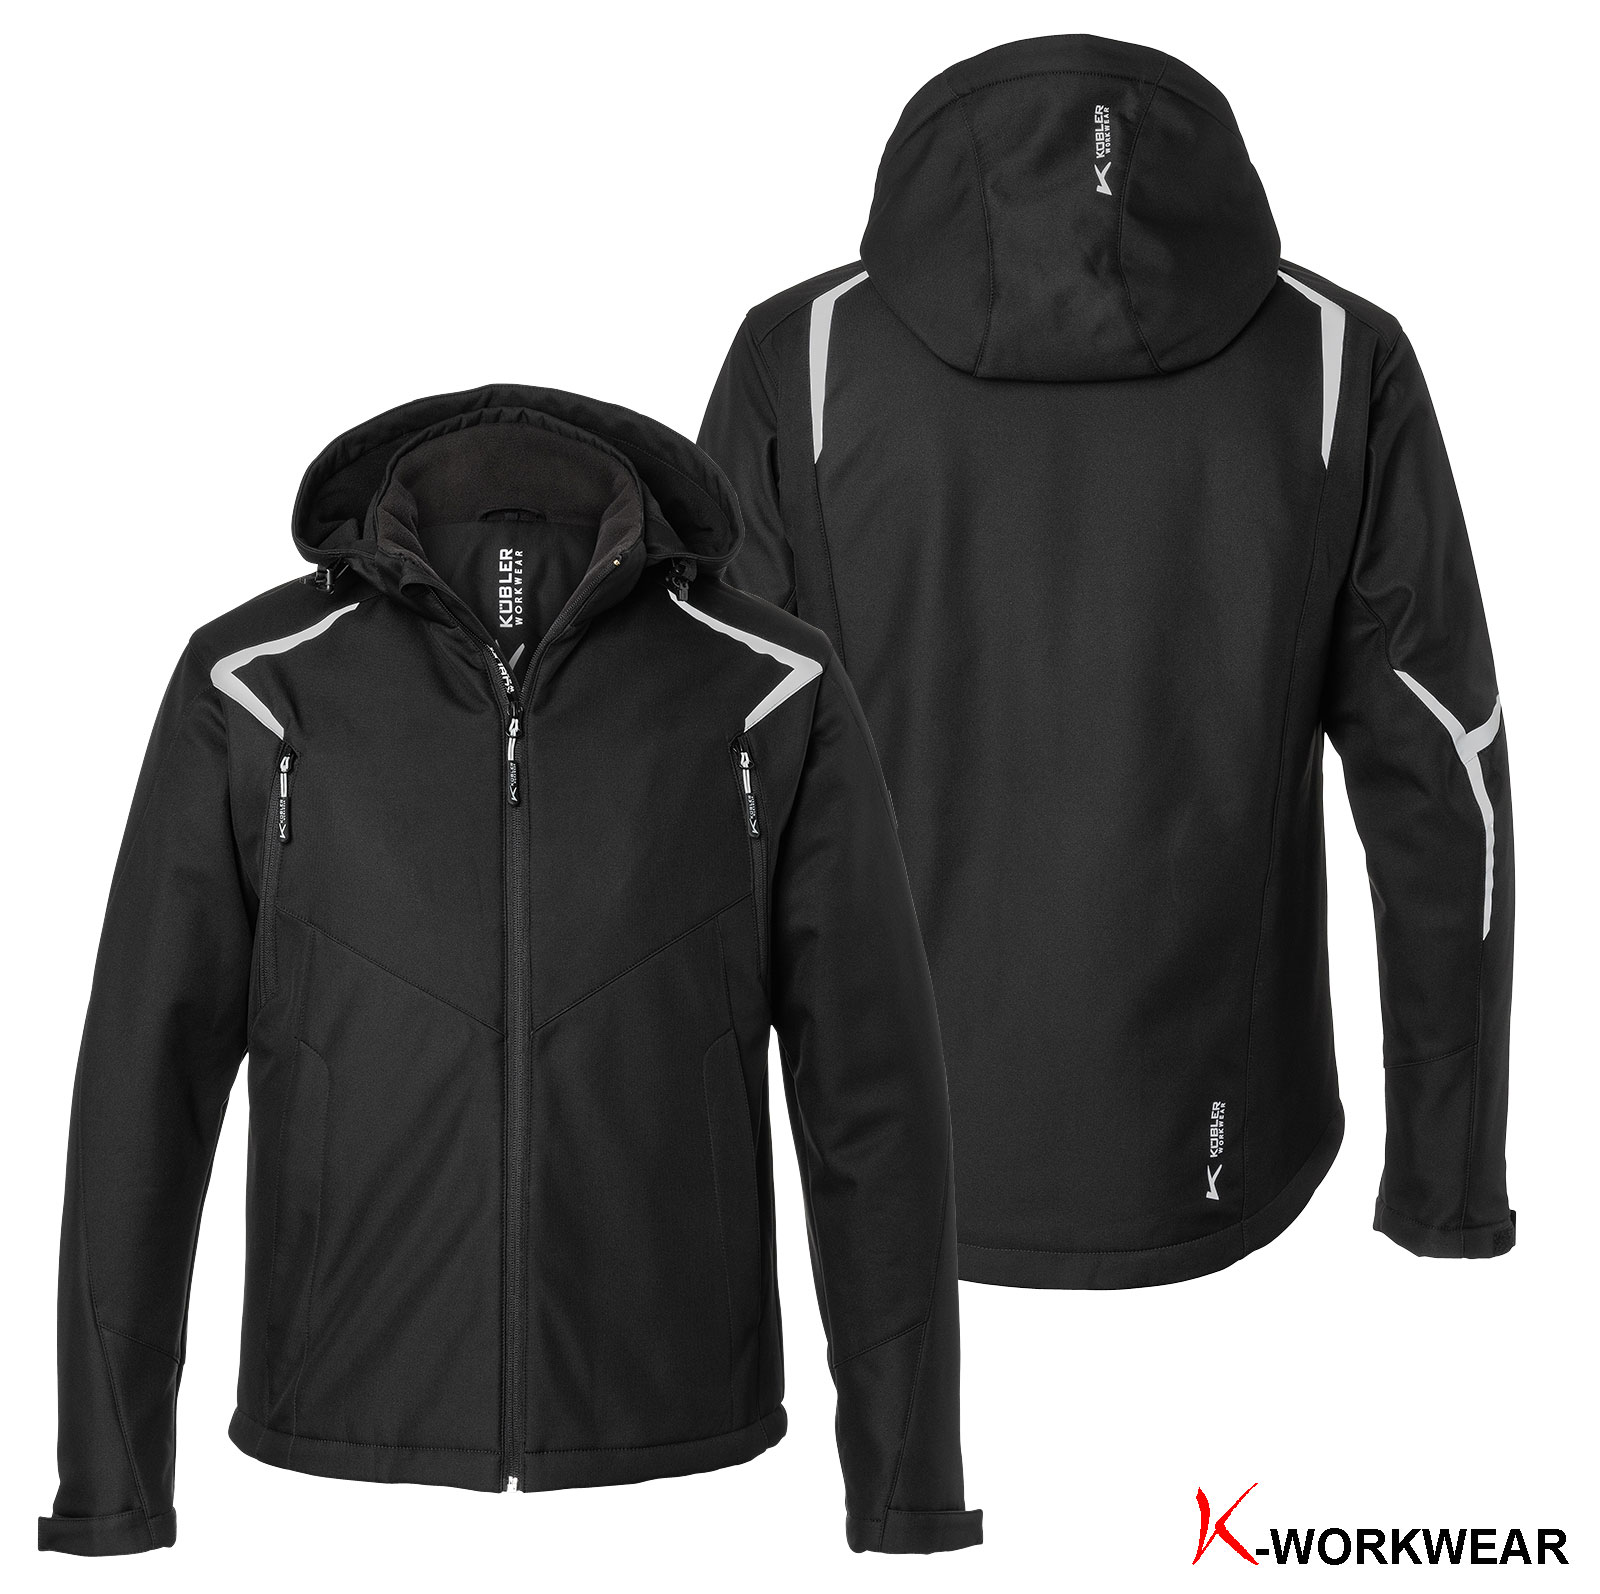 Kübler® Winter Softshell Jacke 1325 – Bannenberg Arbeitsschutz GmbH AT